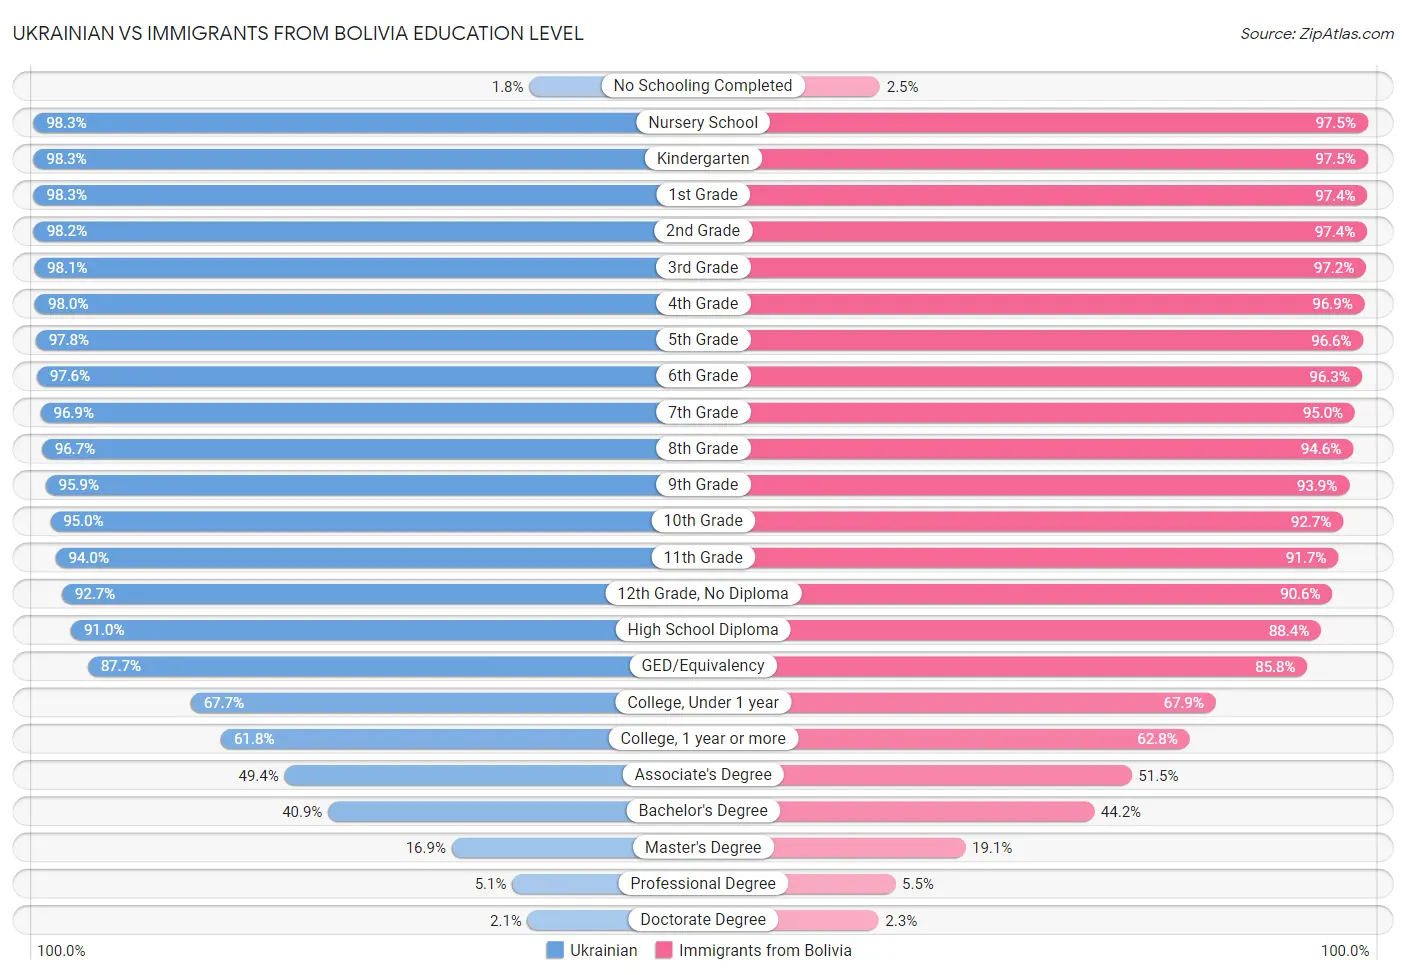 Ukrainian vs Immigrants from Bolivia Education Level